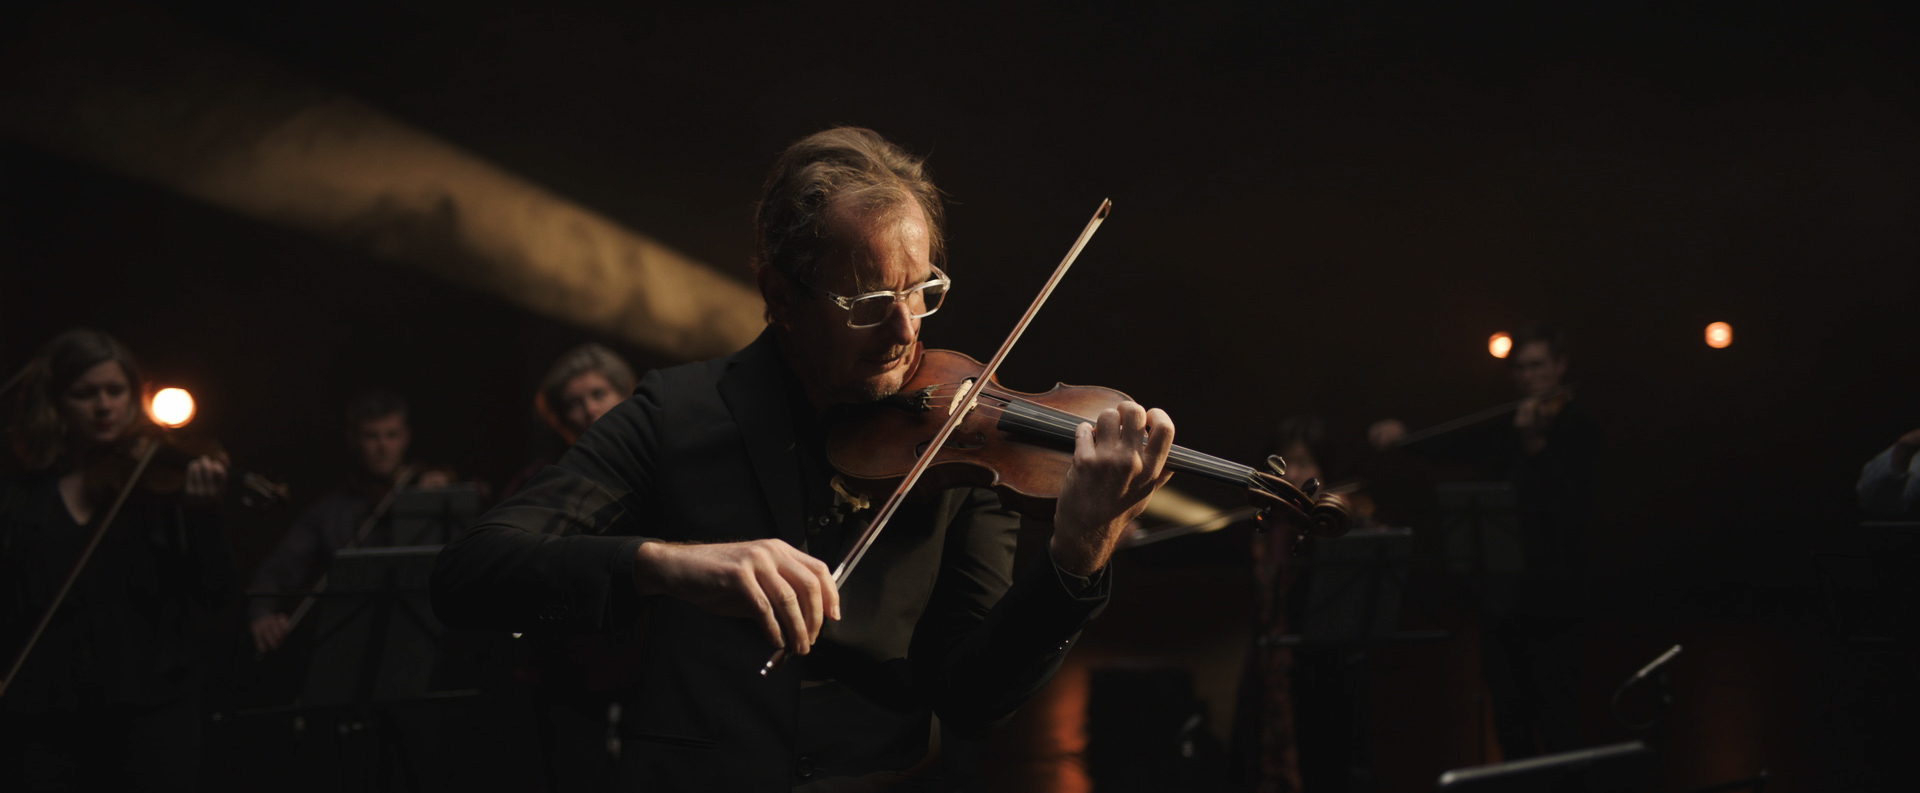 A man playing a violin.